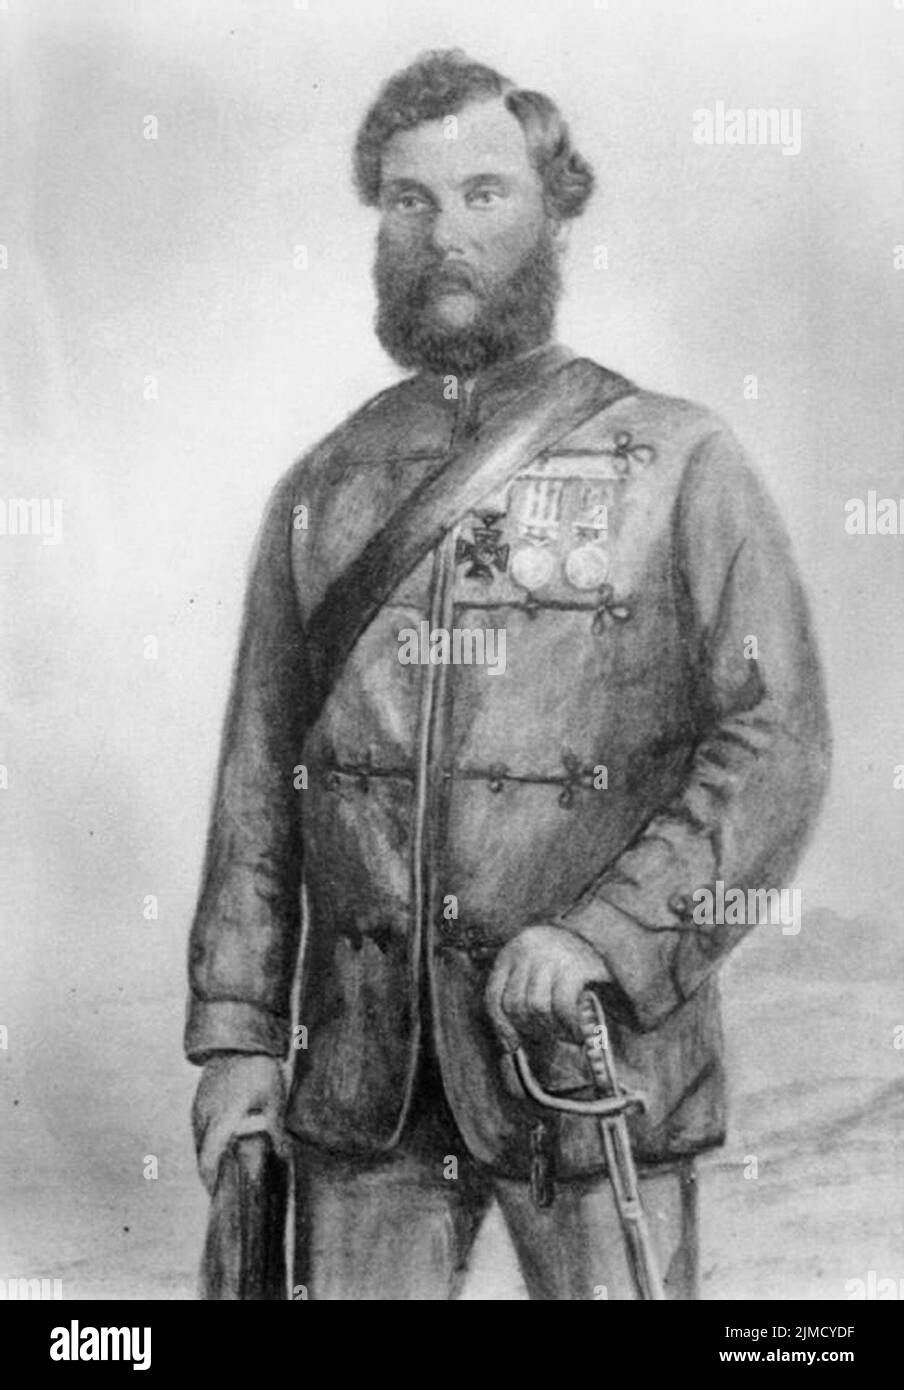 Ritratto del colonnello Robert Hope Moncrieffe Aitken che è stato premiato il VC durante il Mutiny indiano. Foto Stock